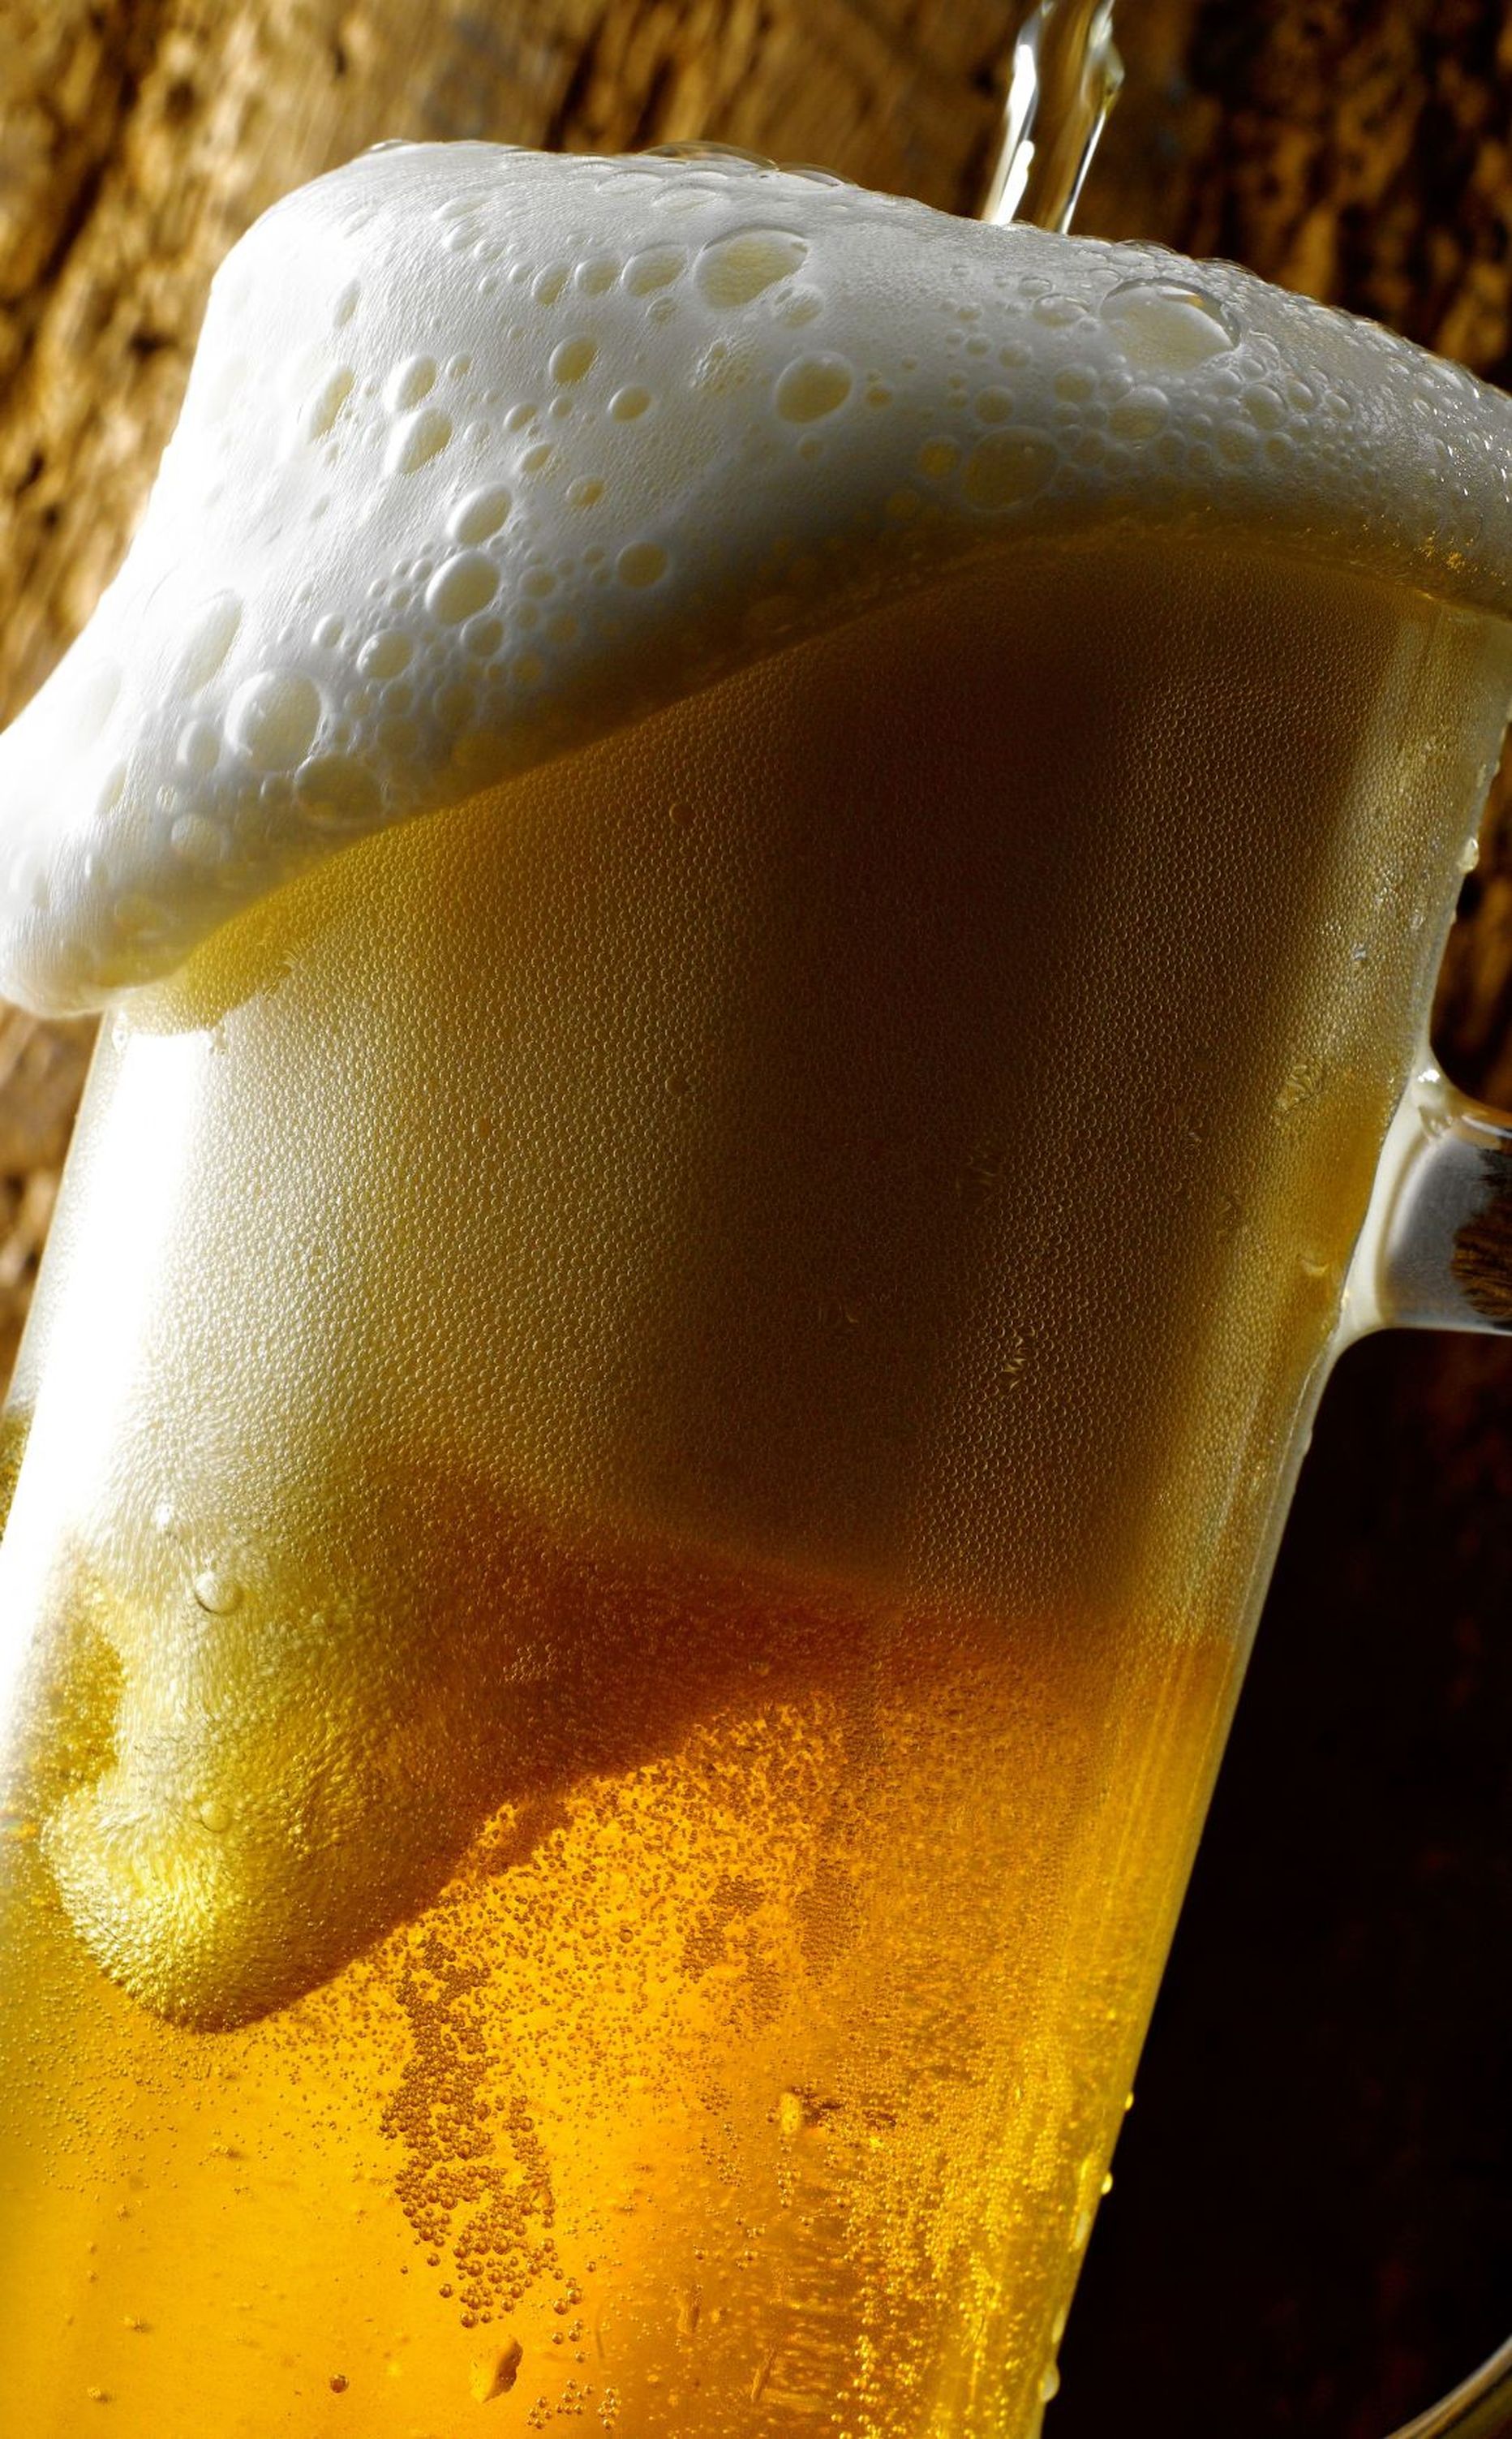 Pint õlut enne roolikeeramist võib muutuda Inglismaal ebaseaduslikuks